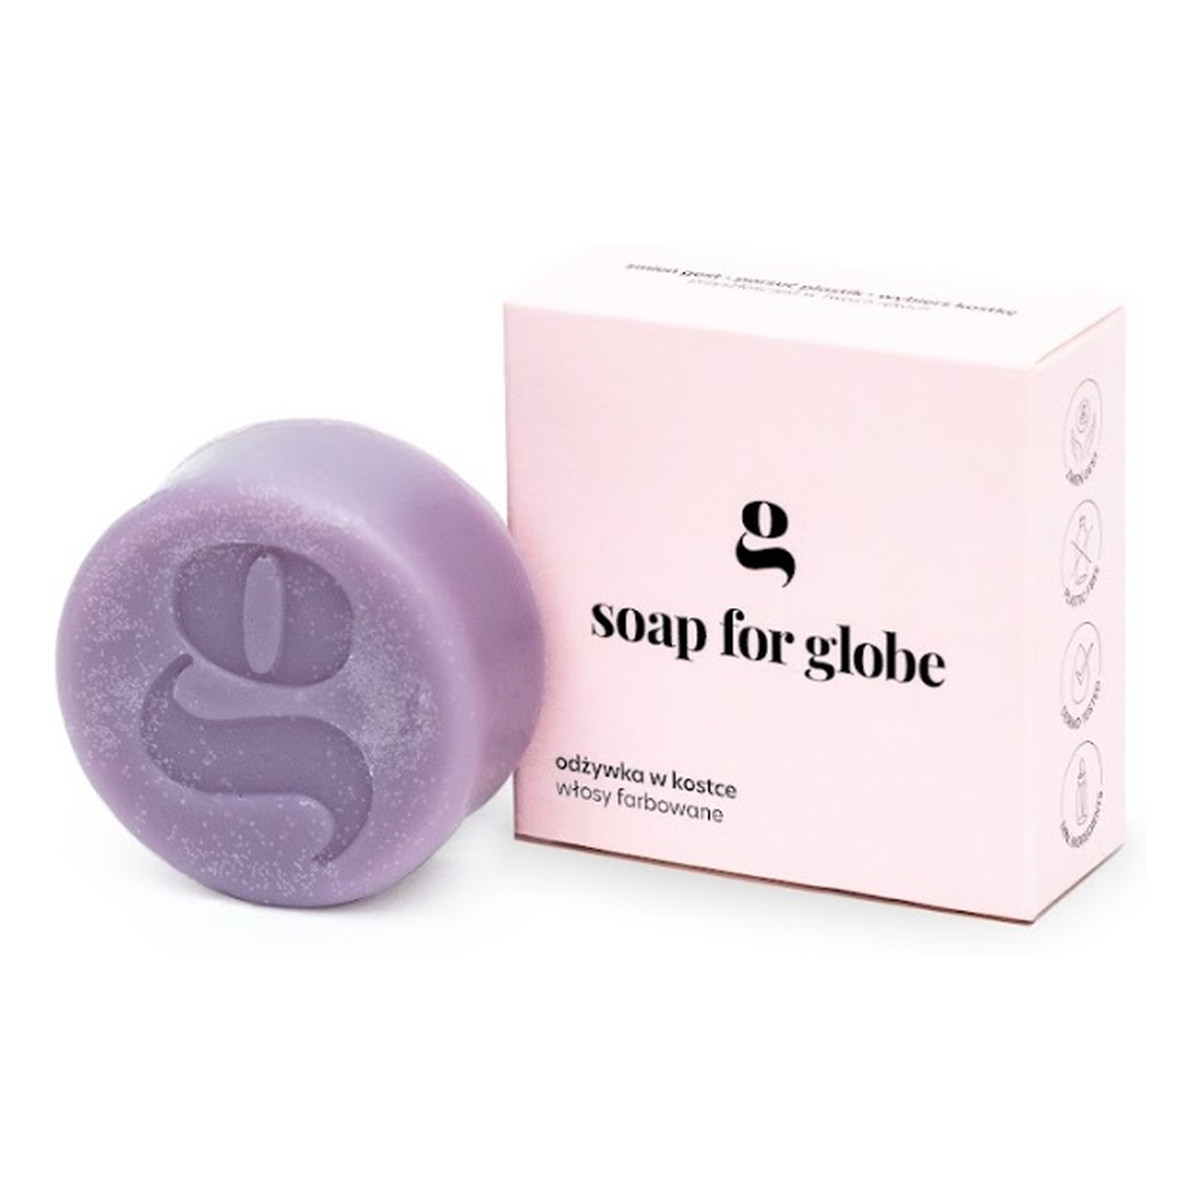 Soap for Globe Odżywka do włosów farbowanych colour rich 50g 50g